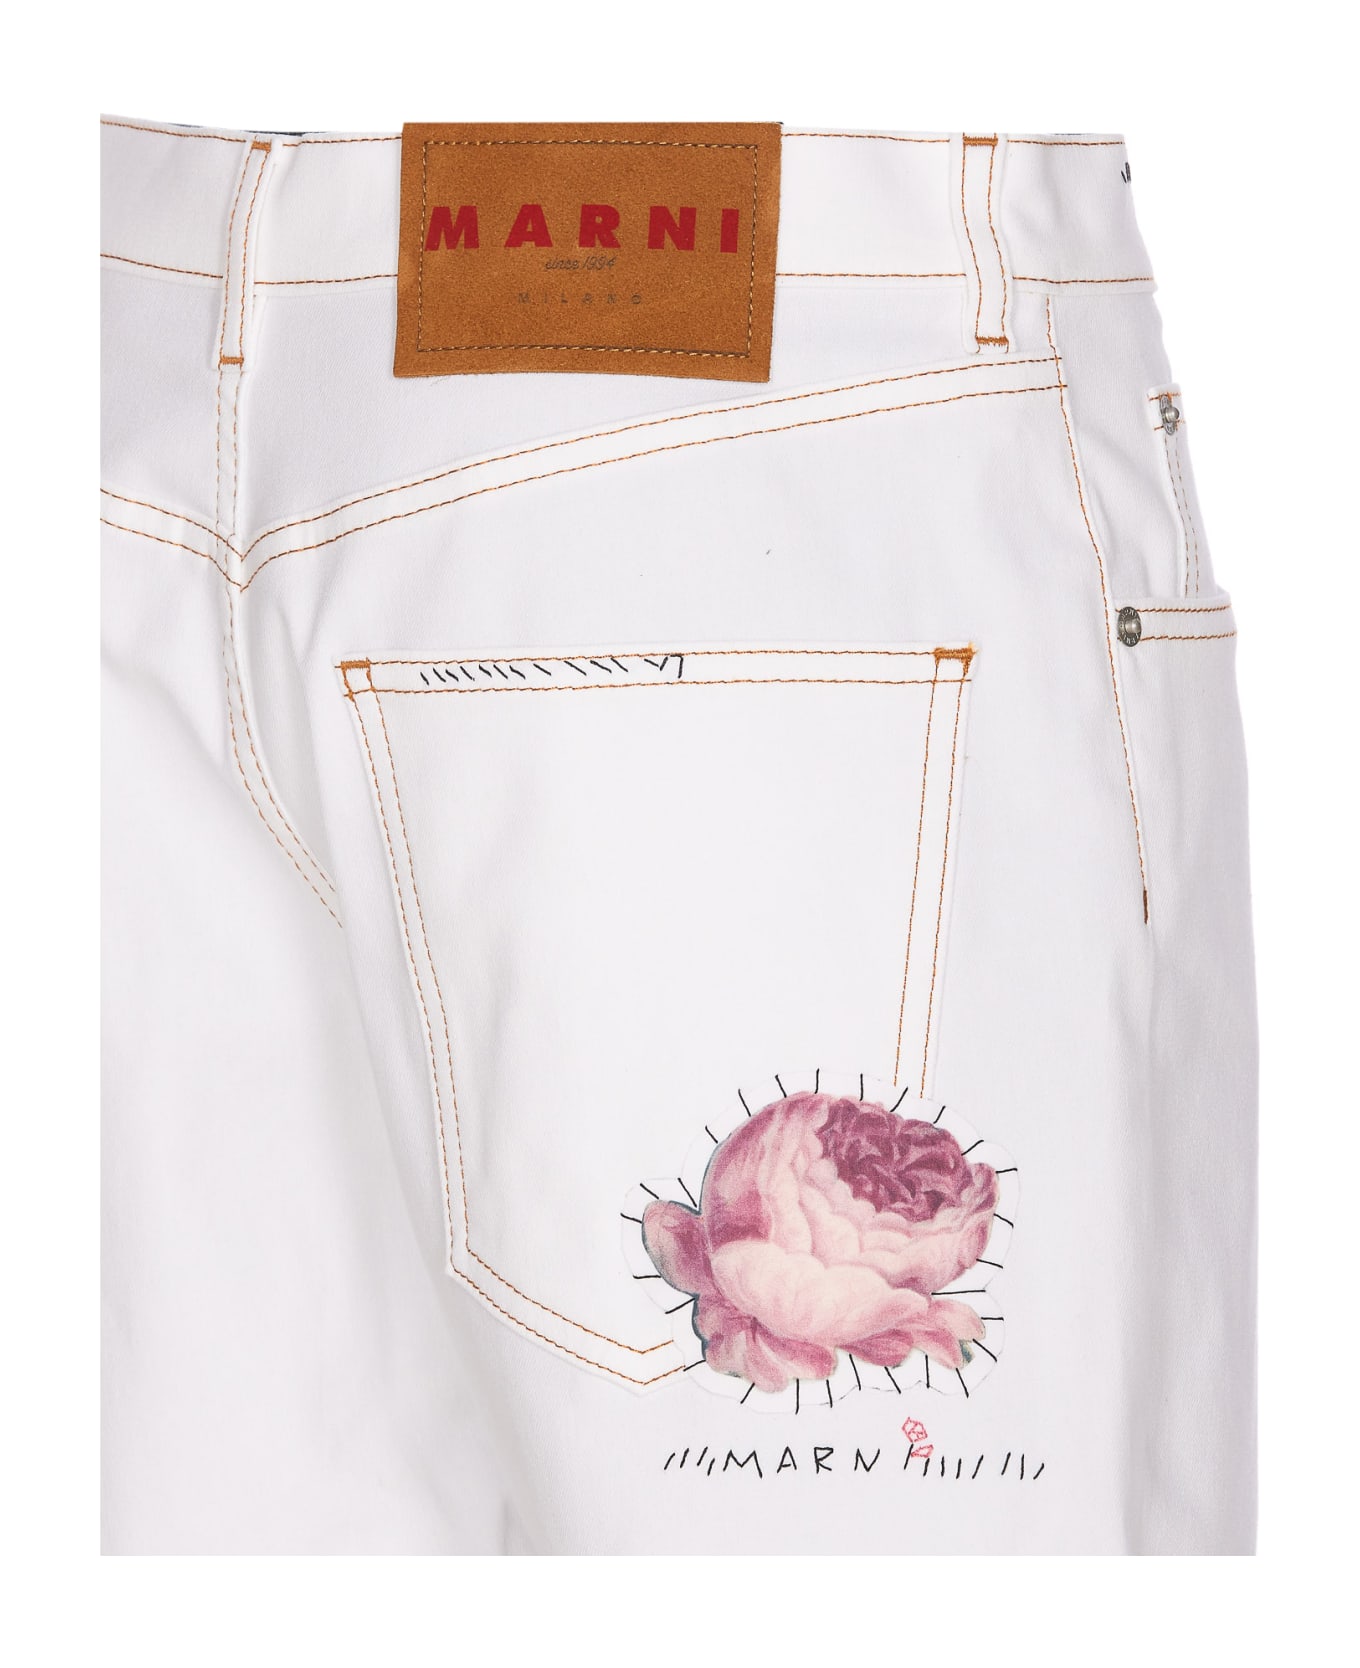 Marni White Denim Shorts With Flower Appliqué - White ショートパンツ